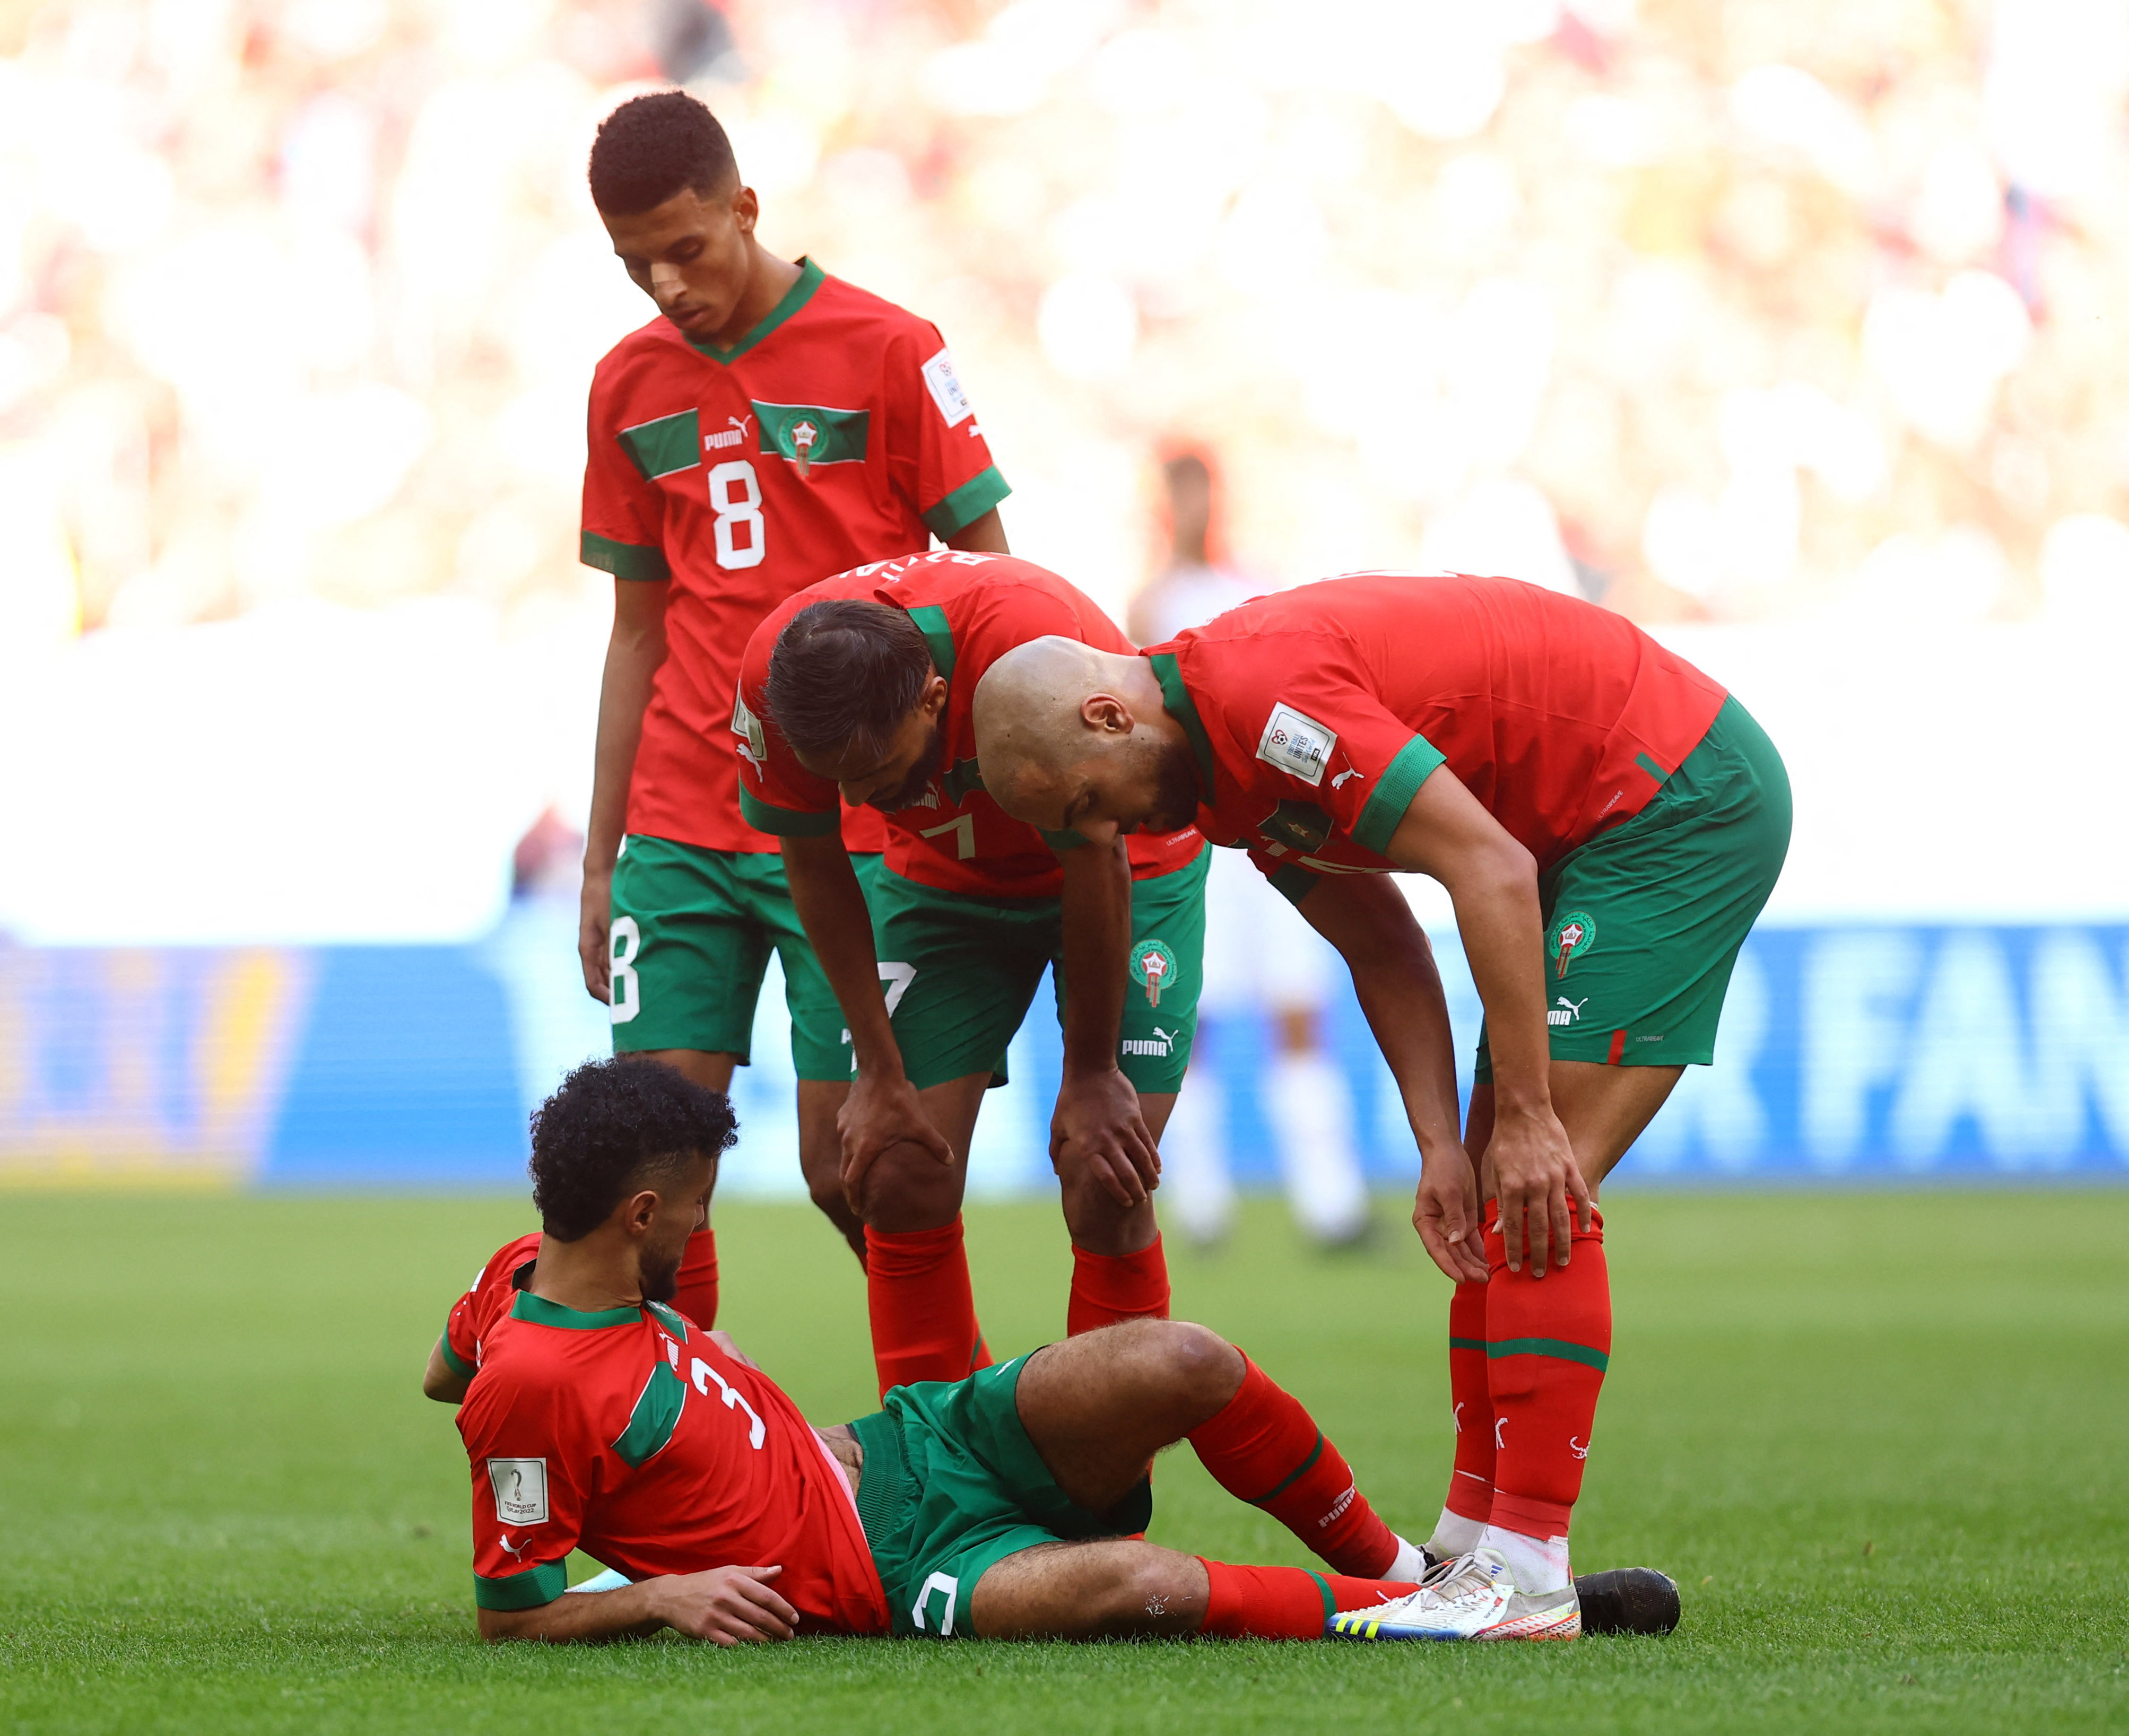 Una inesperada lesión le impidió continuar en el juego a Mazaraoui. (REUTERS/Hannah Mckay)